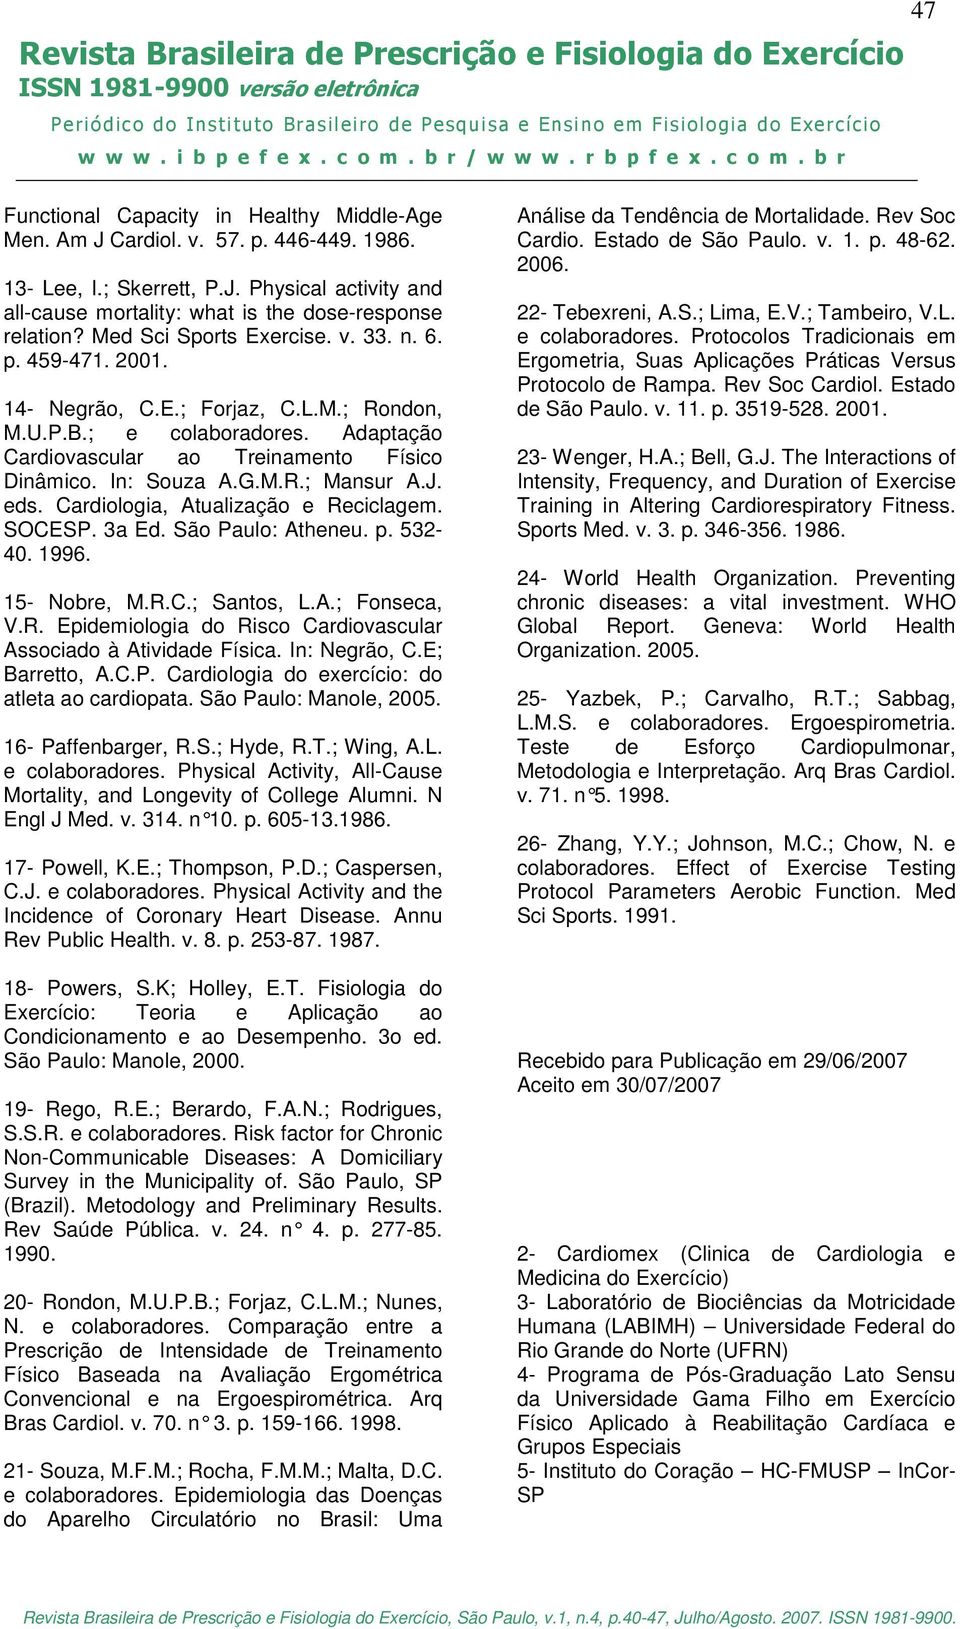 J. eds. Cardiologia, Atualização e Reciclagem. SOCESP. 3a Ed. São Paulo: Atheneu. p. 532-40. 1996. 15- Nobre, M.R.C.; Santos, L.A.; Fonseca, V.R. Epidemiologia do Risco Cardiovascular Associado à Atividade Física.